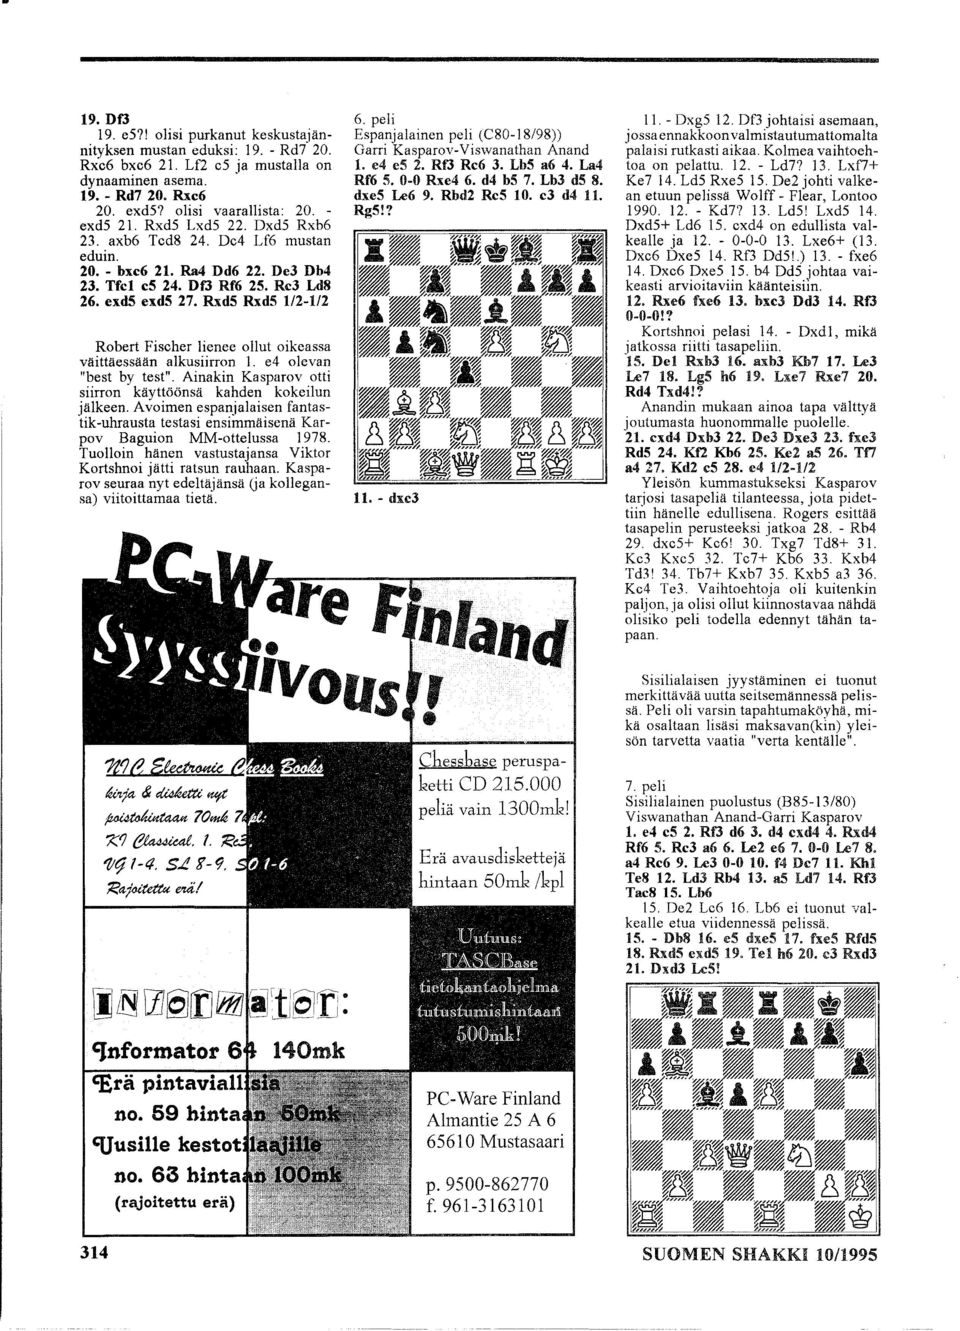 Rxd5 Rxd5 1/2-1/2 Robert Fischer lienee ollut oikeassa väittäessään alkusiirron 1. e4 olevan "best by test". Ainakin Kasparov otti siirron käyttöönsä kahden kokeilun jälkeen.